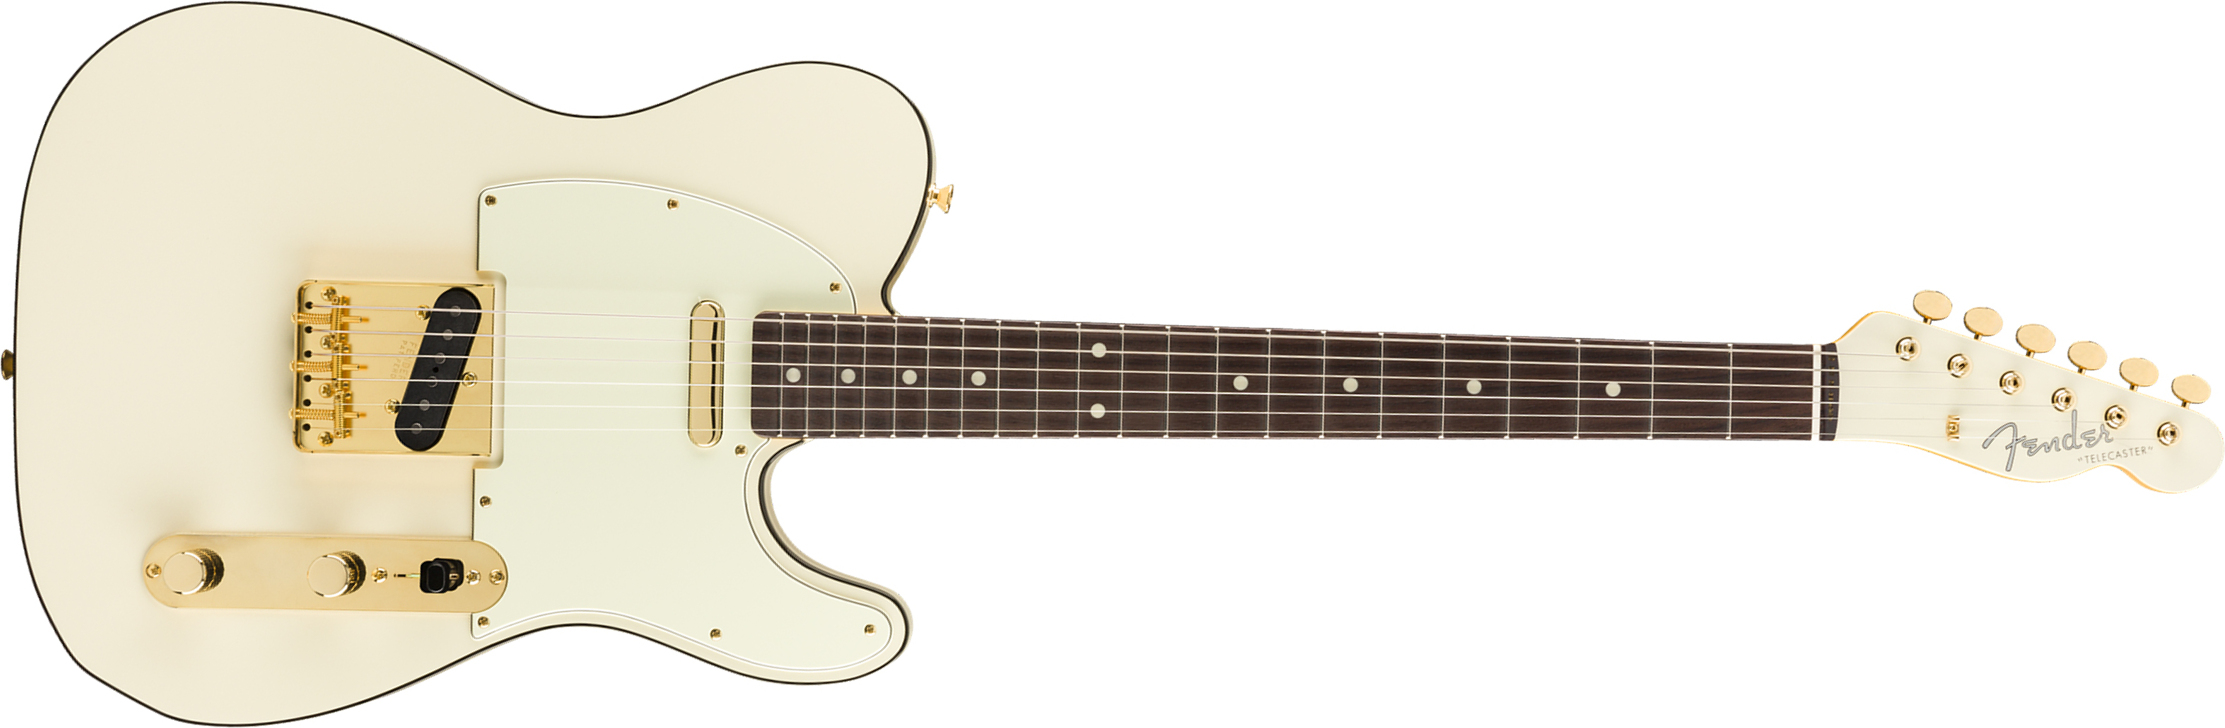 Fender Tele Daybreak Ltd 2019 Japon Gh Rw - Olympic White - Guitare Électrique Forme Tel - Main picture